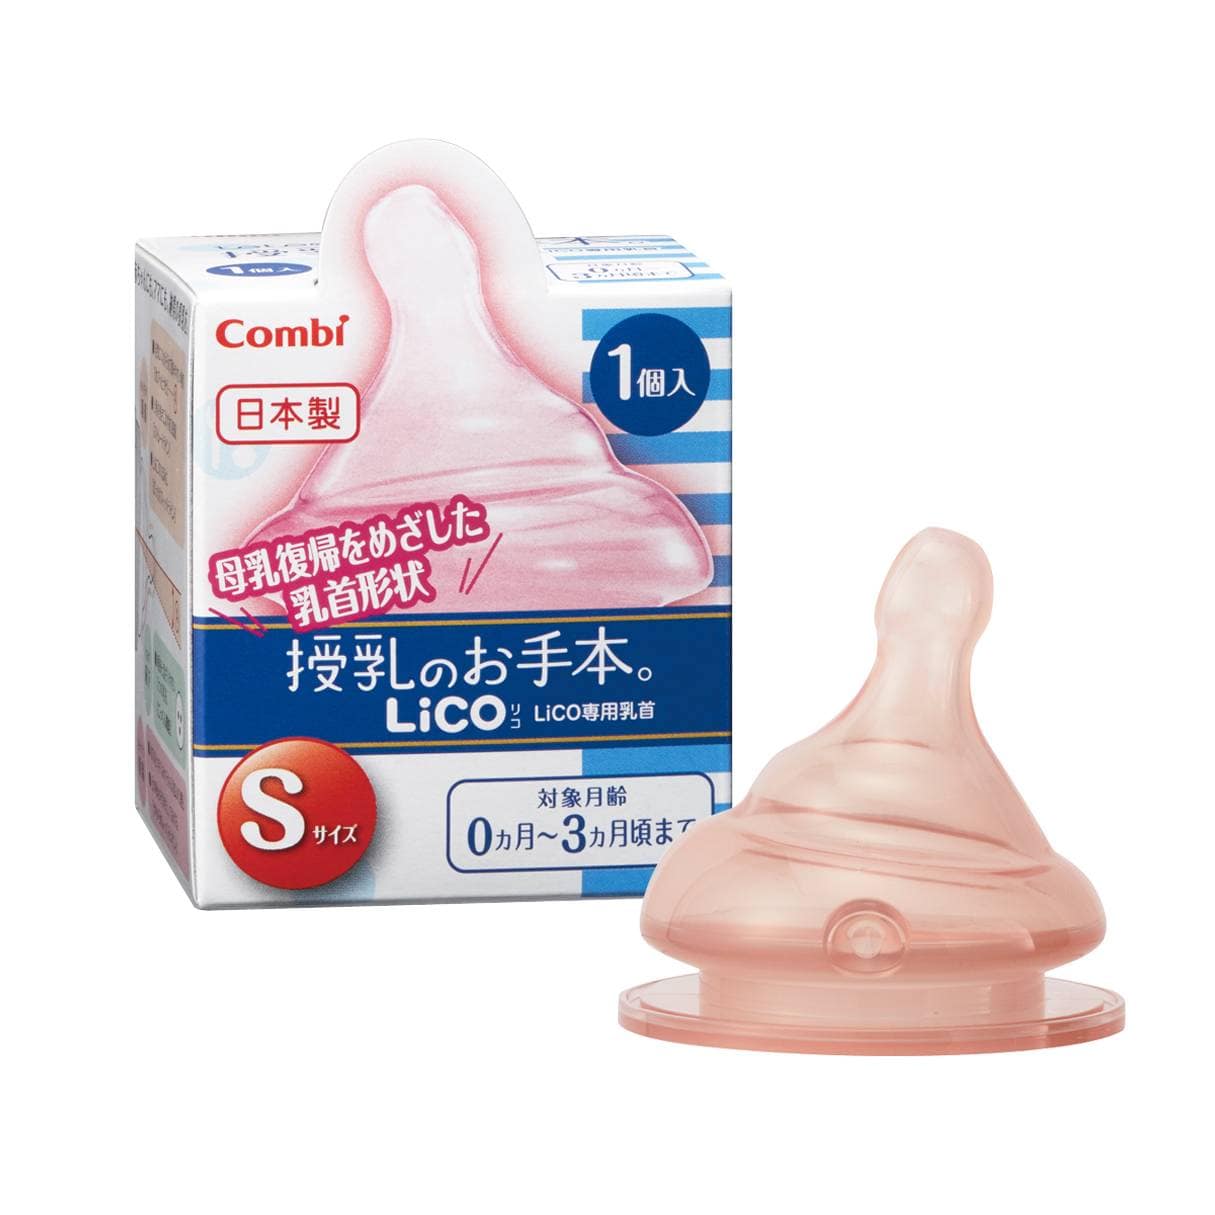 テテオ 授乳のお手本 LiCO 乳首 1個入｜コンビ公式ブランドストア